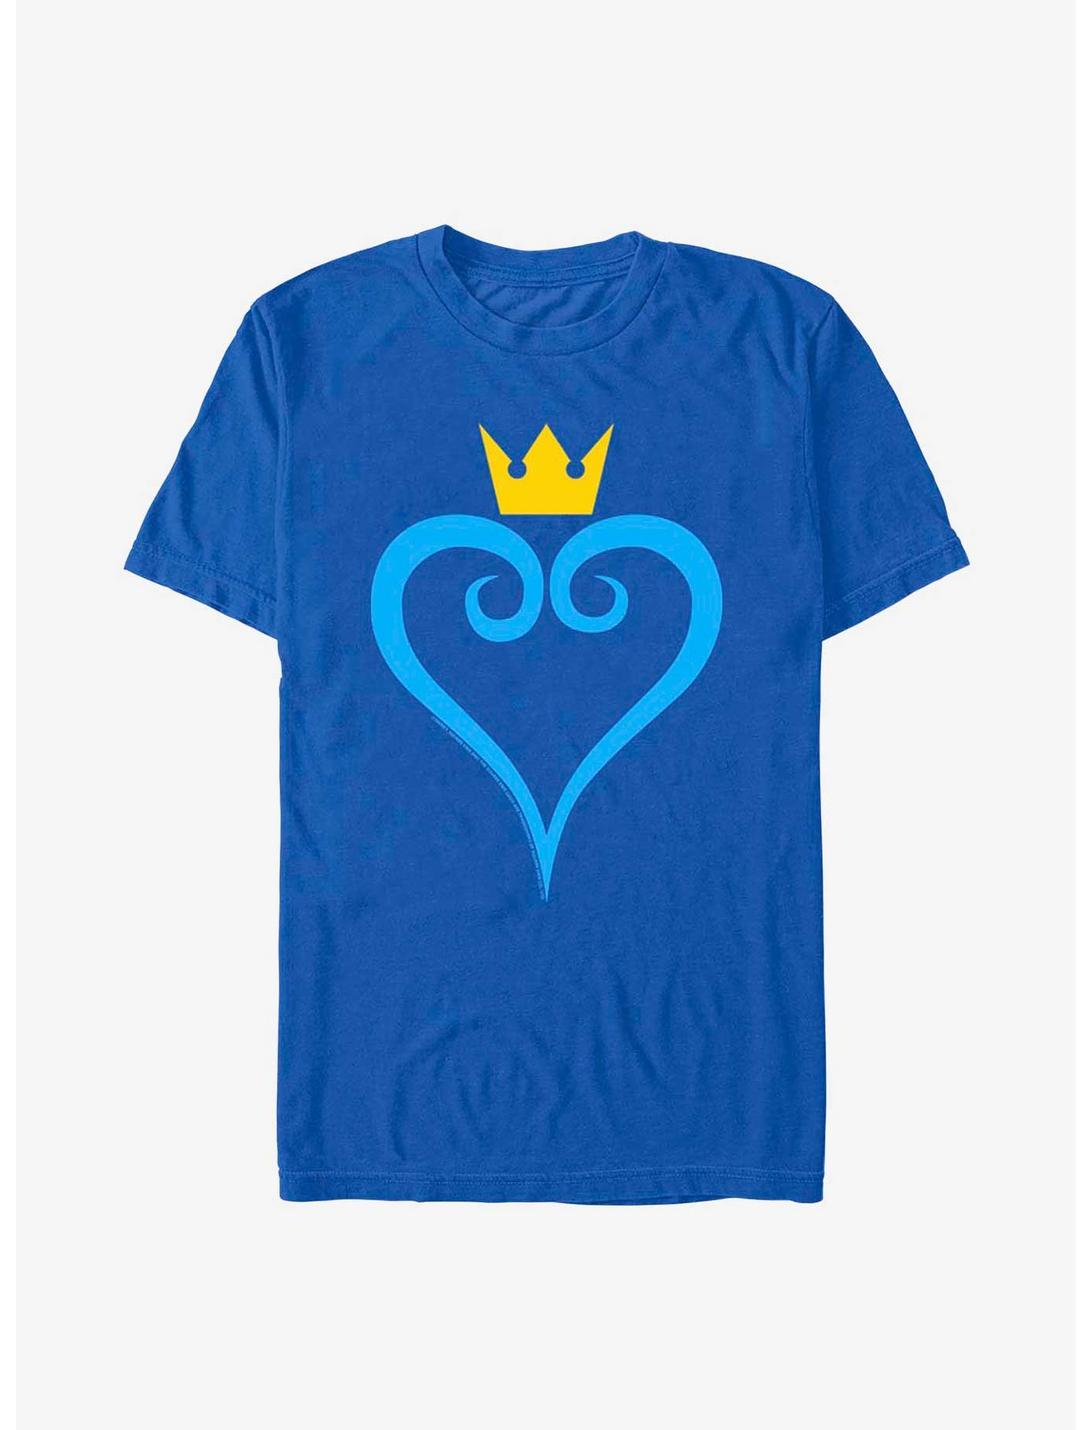 Disney Kingdom Hearts Heart And Crown T-Shirt, ROYAL, hi-res